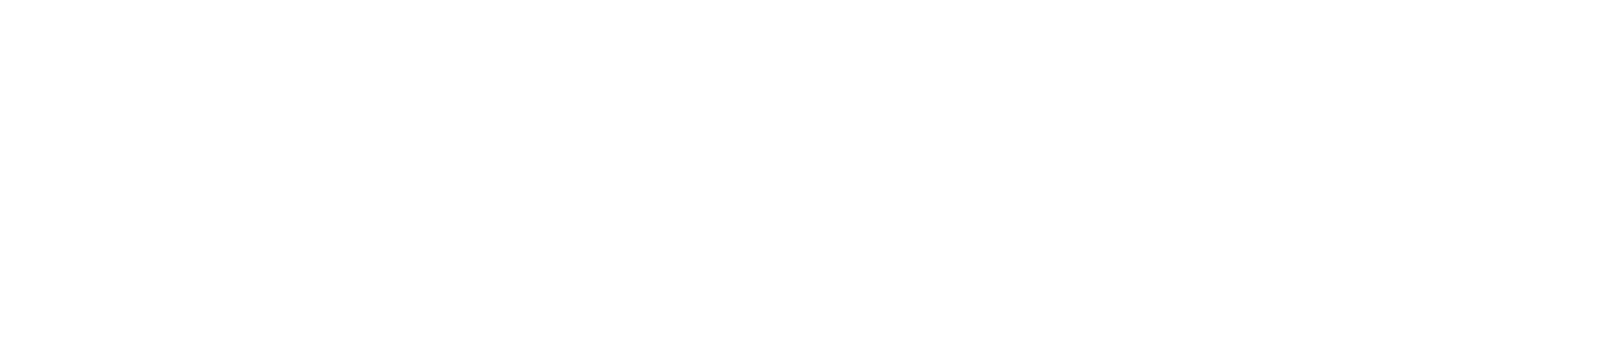  Online Jobs Mafia | Work From Home Jobs | Internet Jobs | Online Teaching Jobs